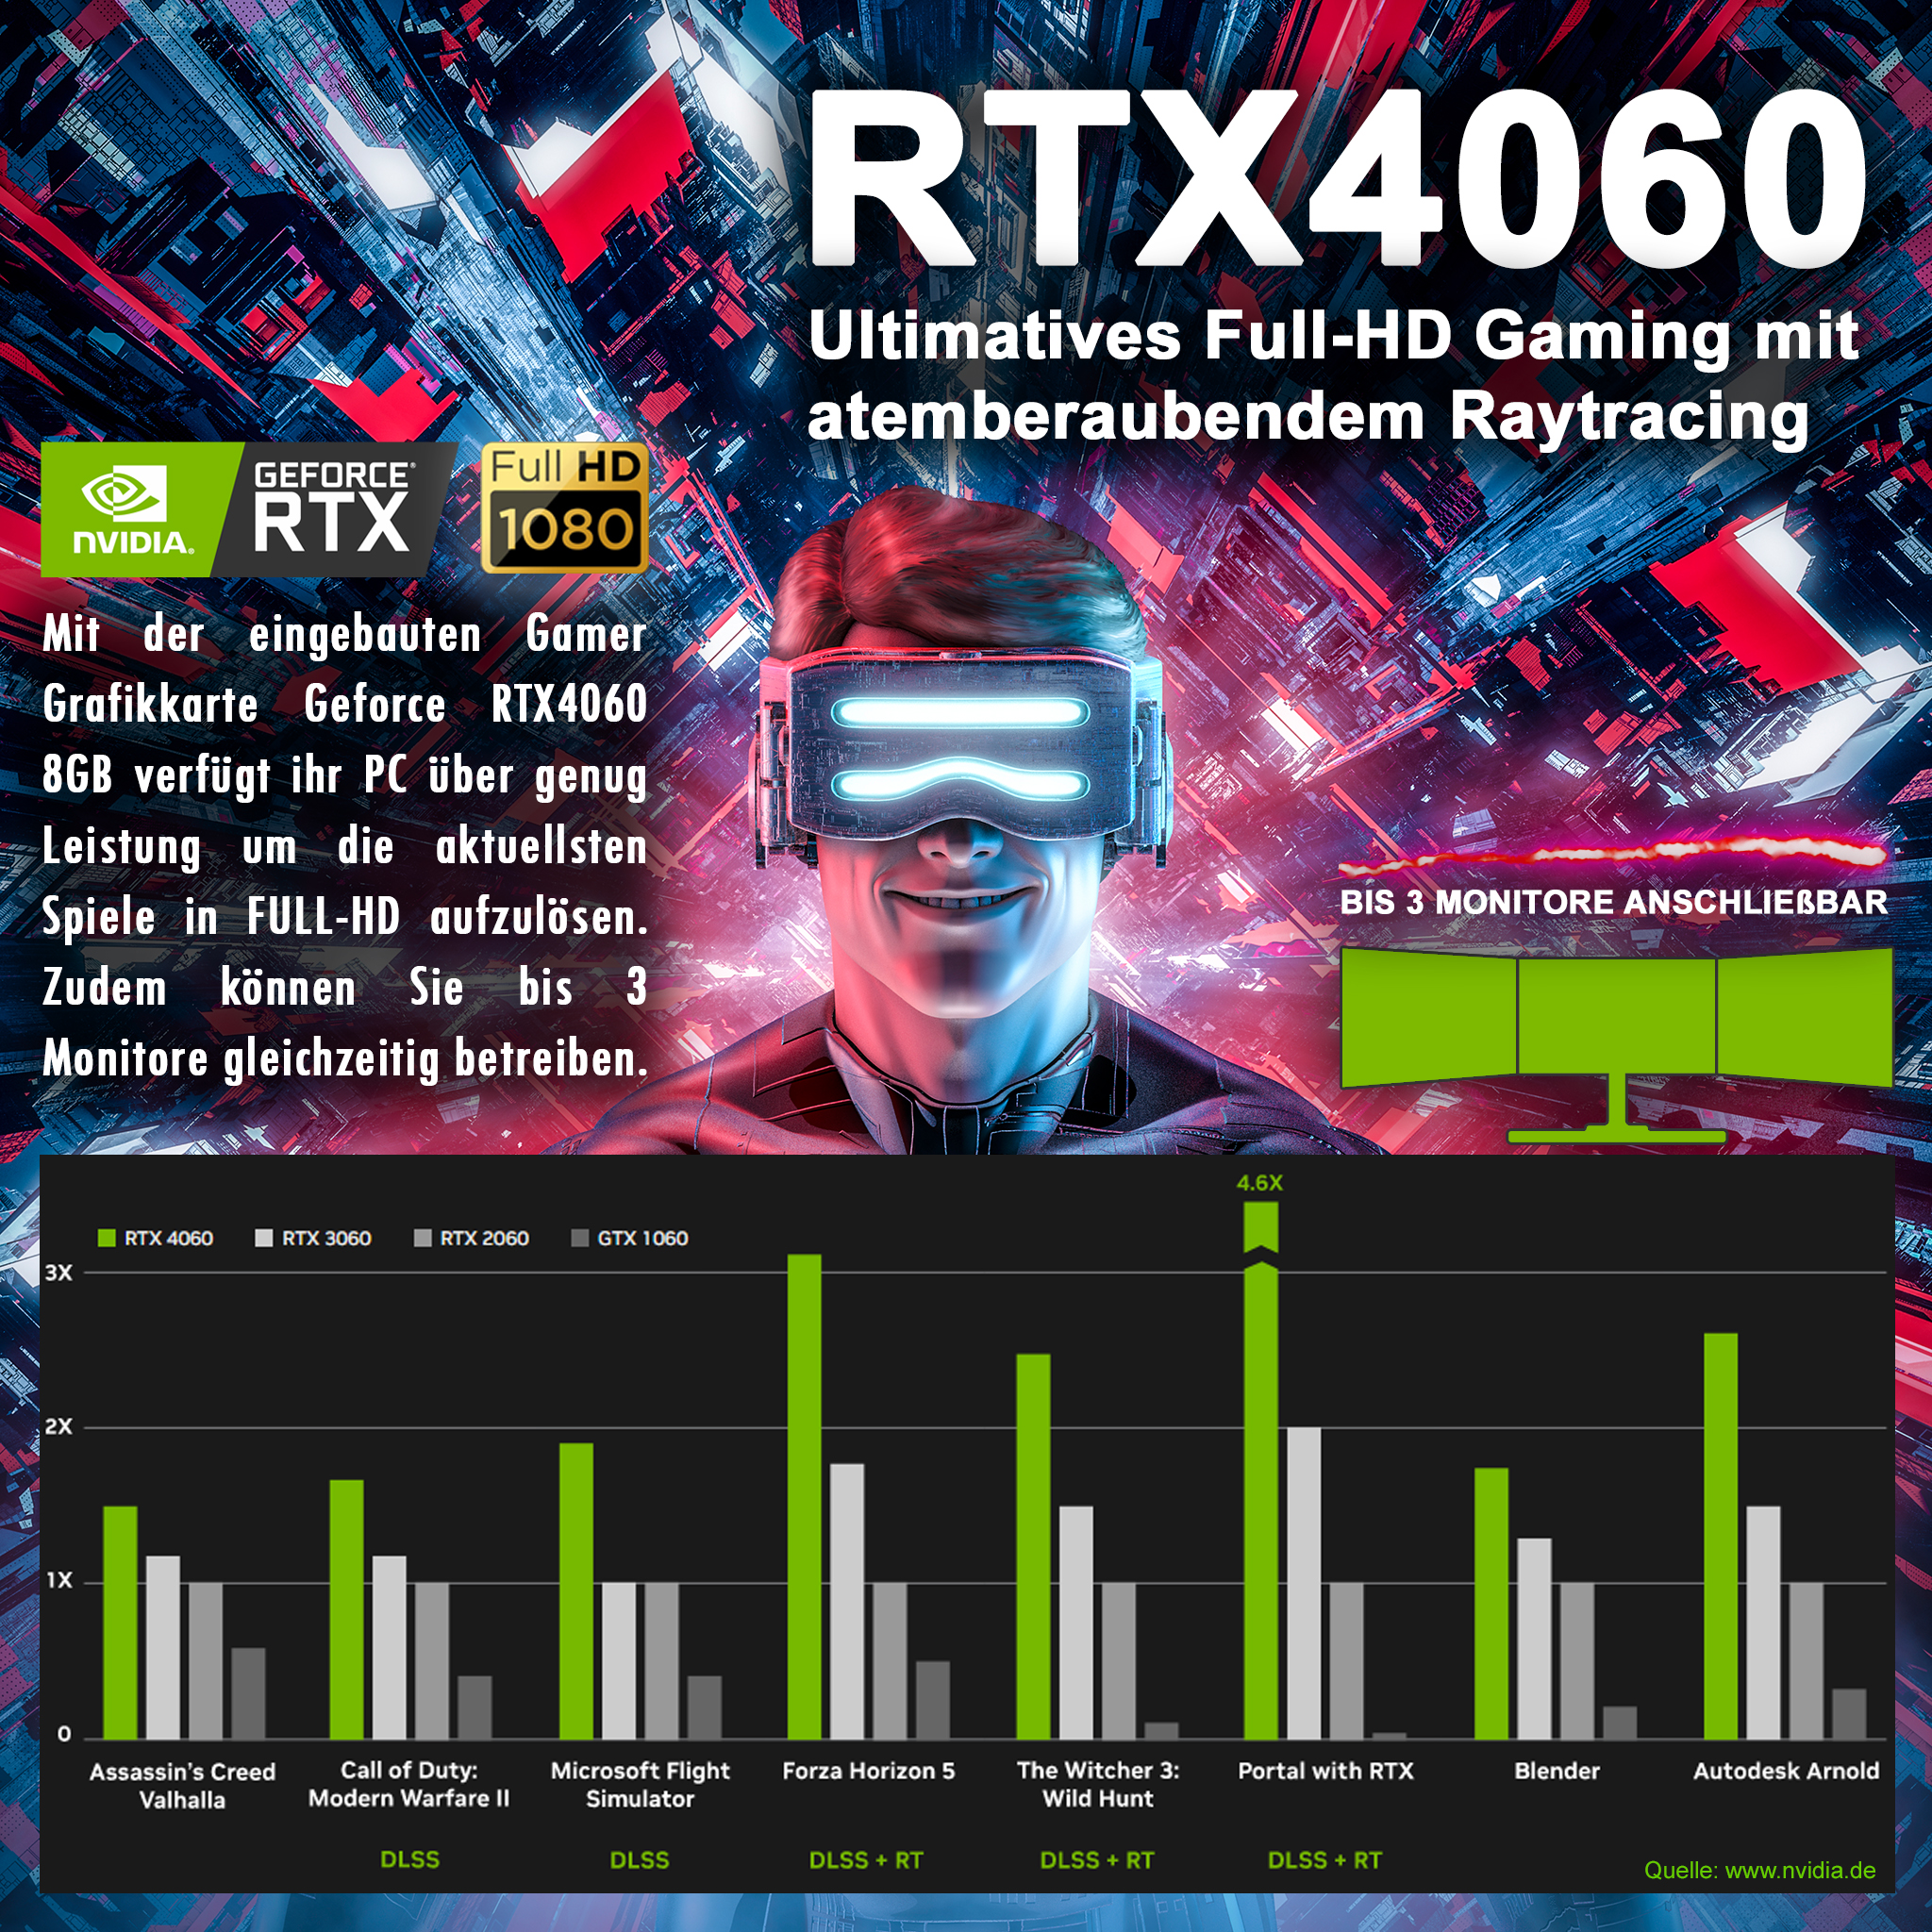 KRAFTPC 1000 Gaming GeForce GB RTX4060, GB 32 RAM, GB HDD, GB 2000 SSD, 5800X PC Komplett-Set, Prozessor, mit 8